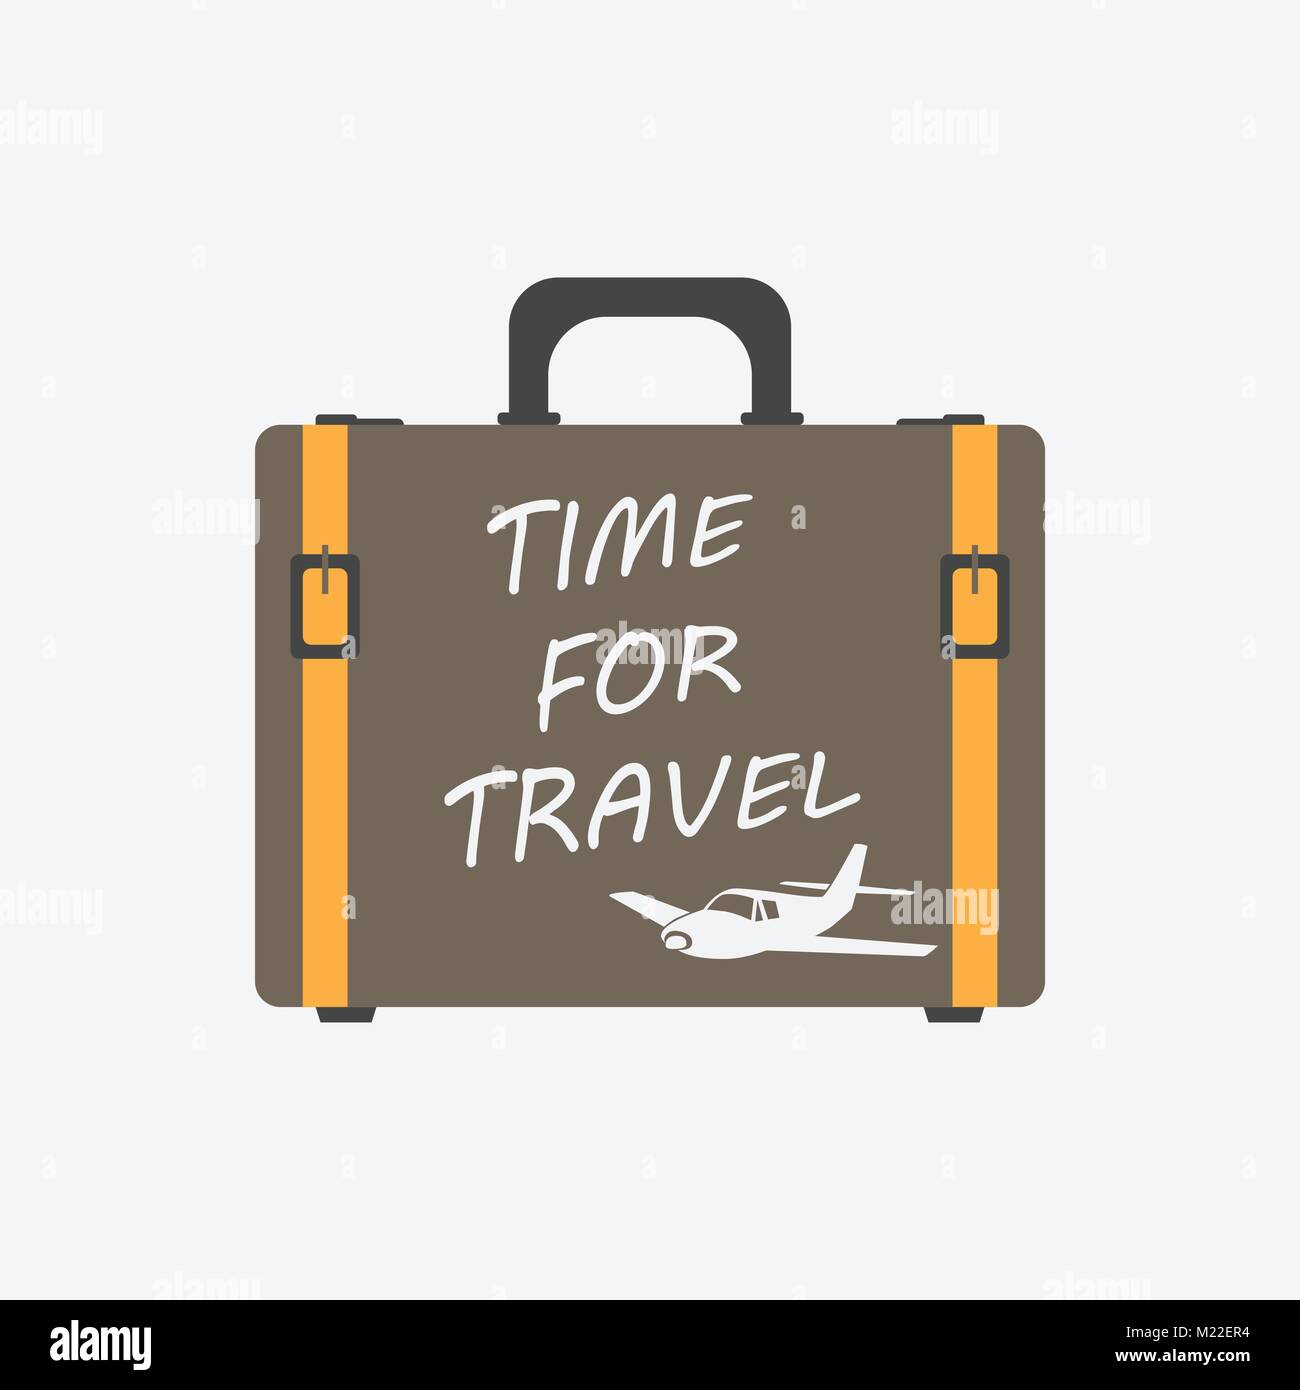 Zeit für Travel Concept flachbild Vector Illustration. Koffer für Tourismus, Reise, Reise, Tour, Reise, Sommerurlaub. Stock Vektor